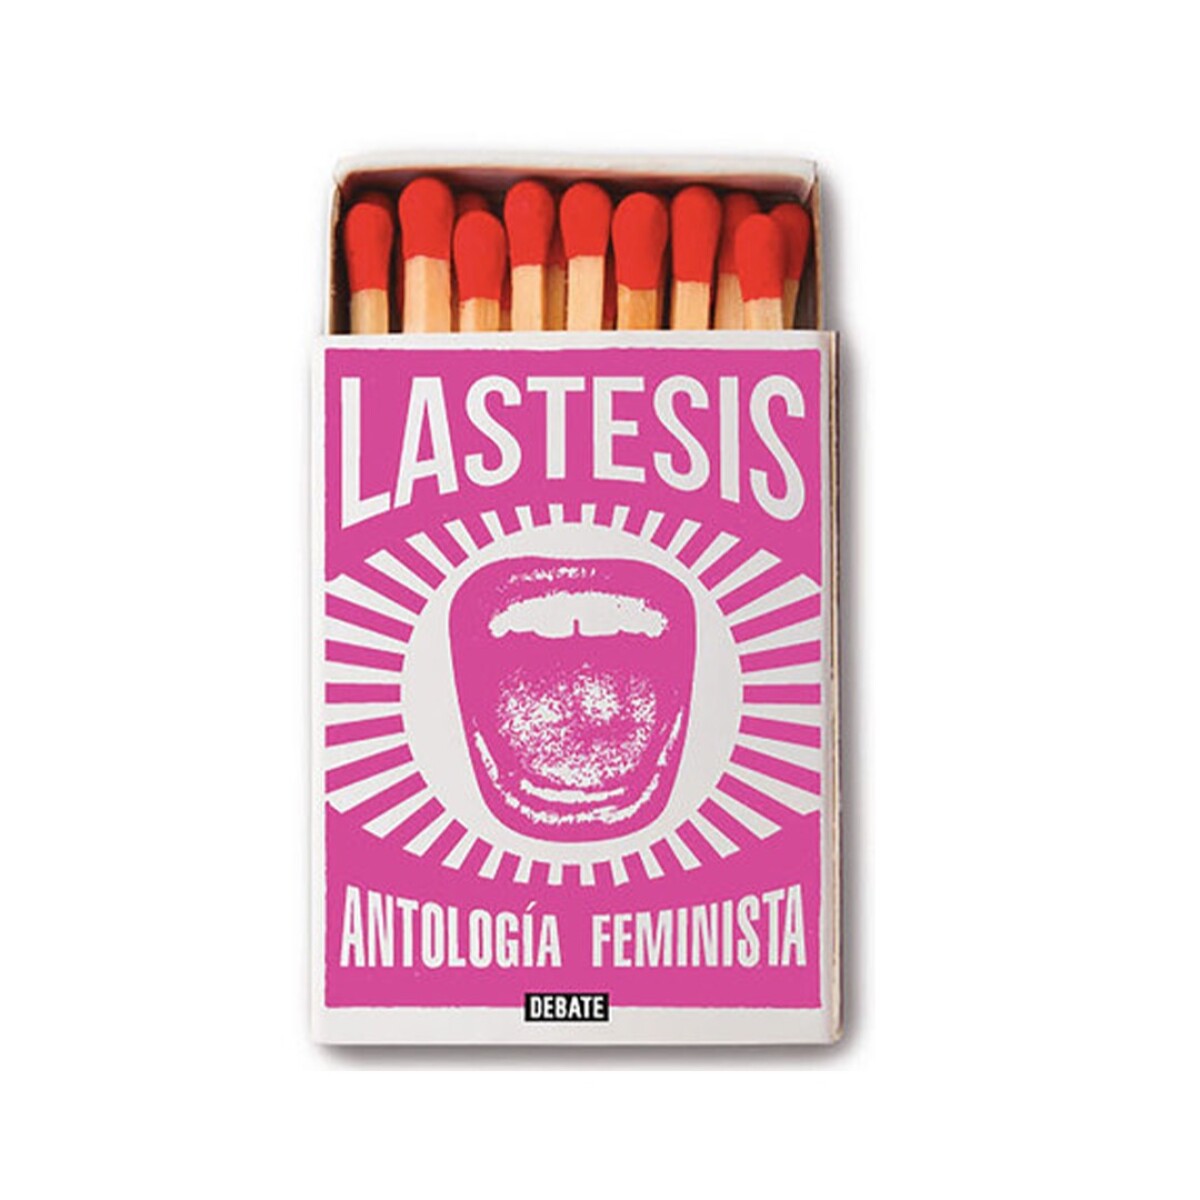 Libro Antologia de Textos Feministas (Lastesis) - 001 